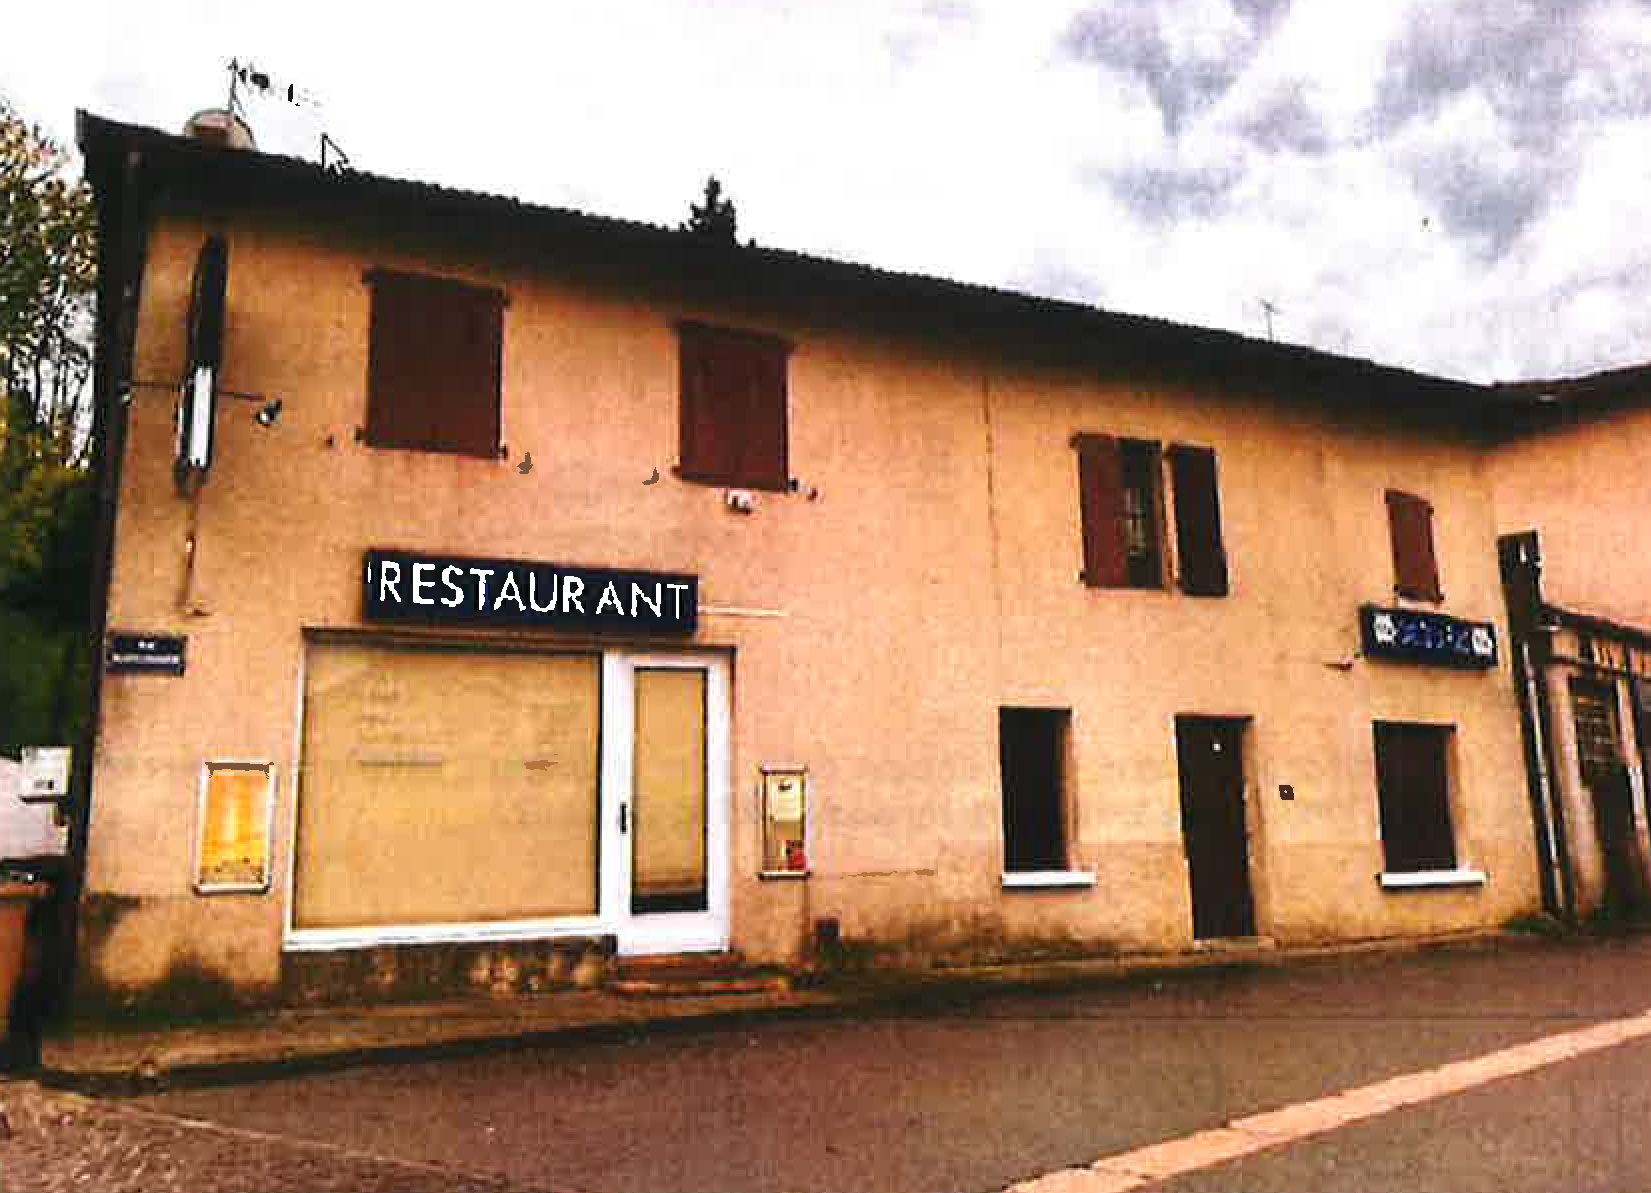 La commune de Diémoz (Nord-Isère) cherche un gérant pour le café-restaurant du village, situé près d'une halle marchande et de l'Eglise.